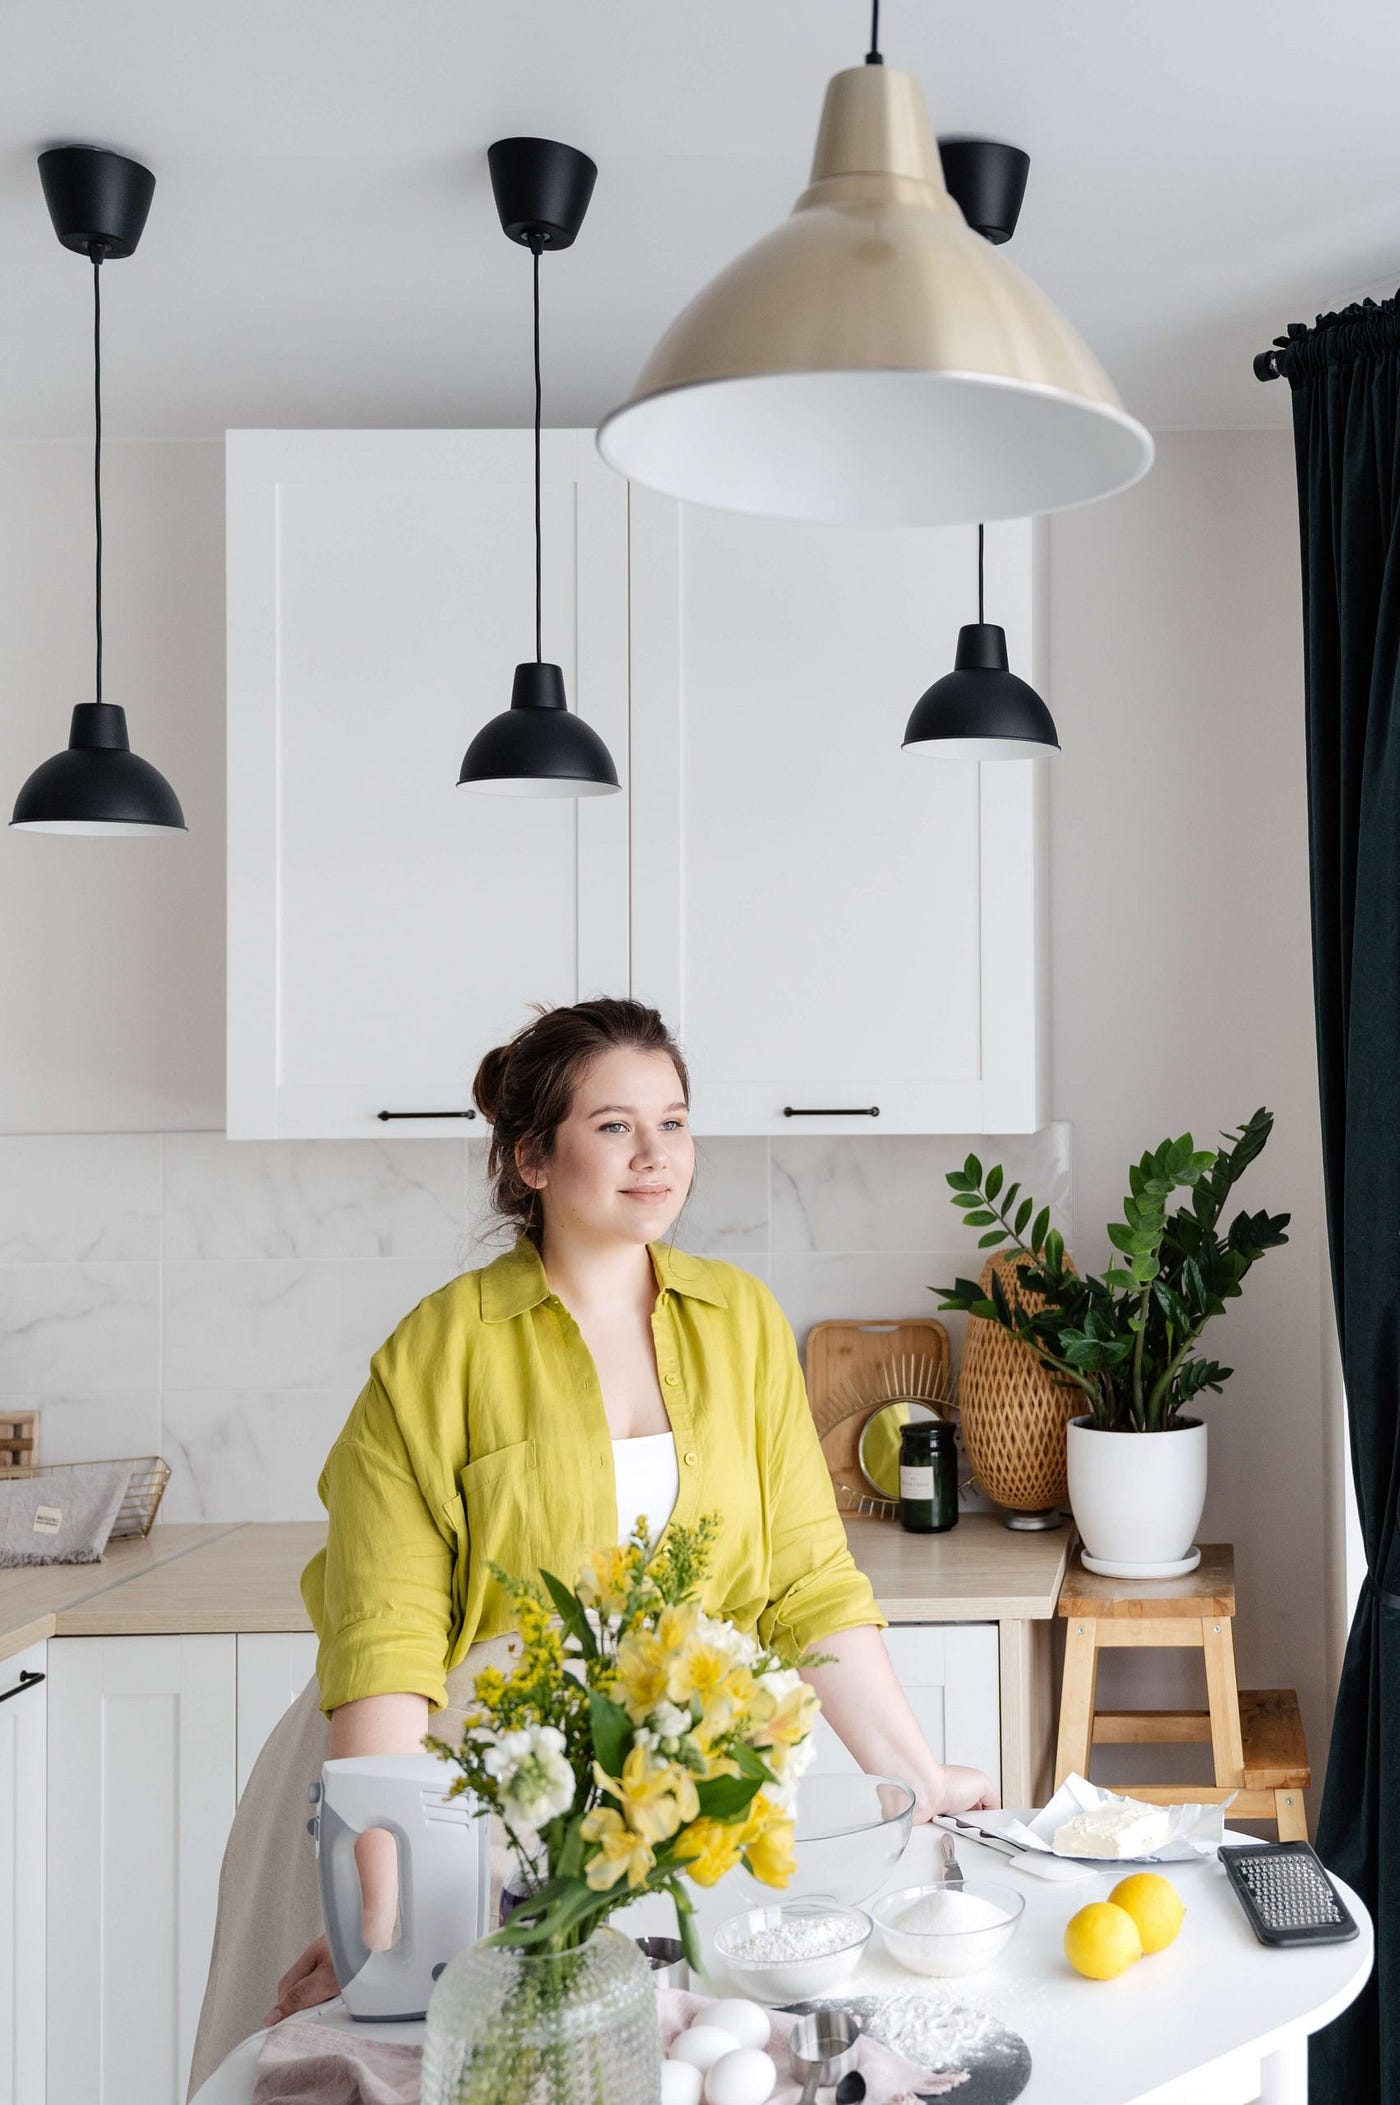 12 Best Drew Barrymore Kitchen Appliances to boost your kitchen work  efficiency, by Sachidaandanand